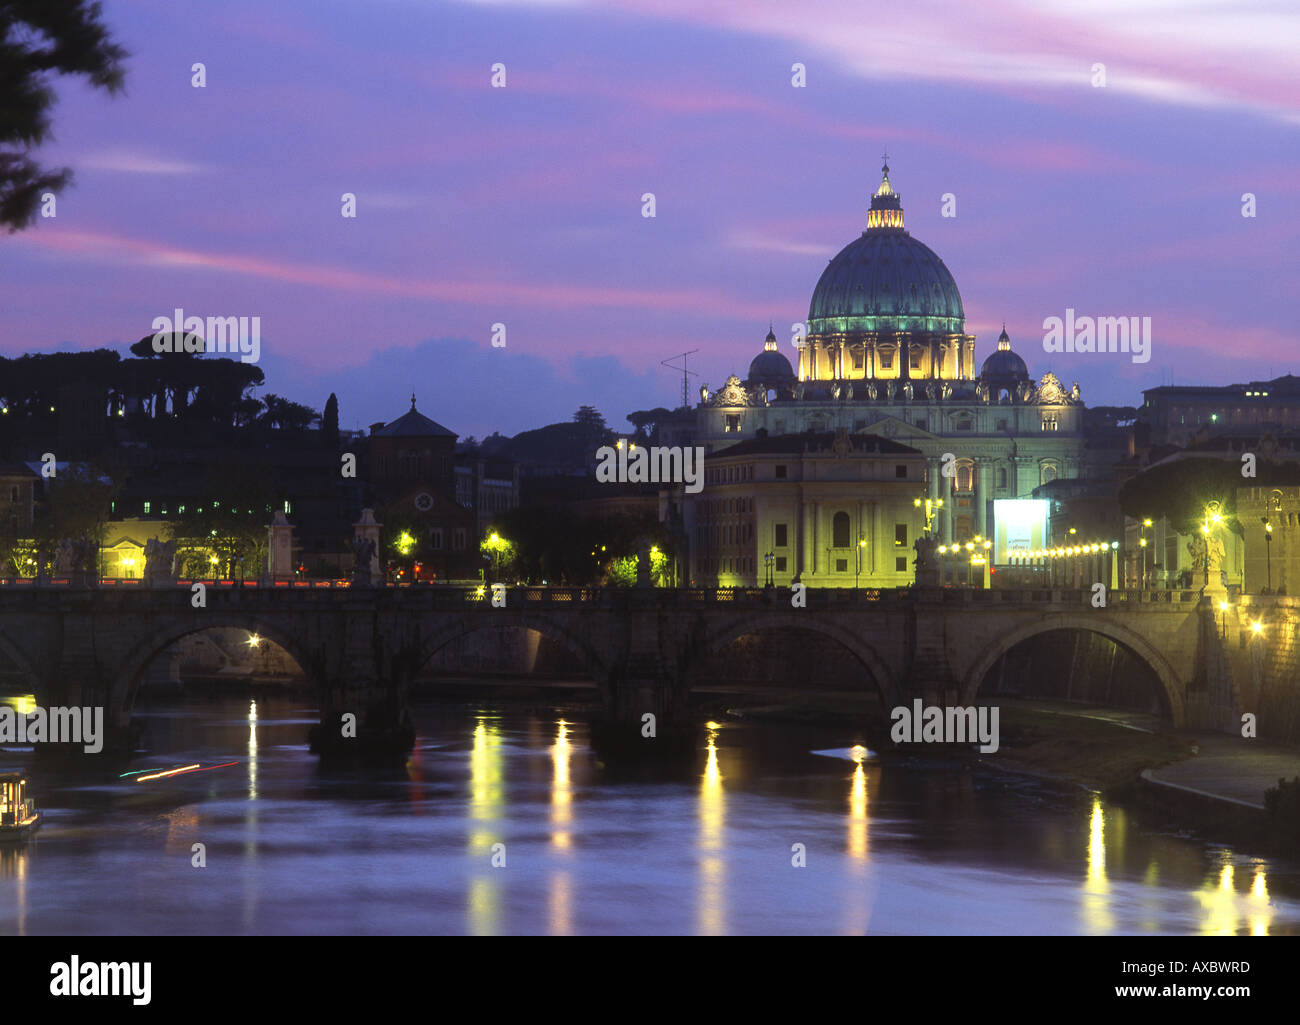 La Basilique St Pierre Ponte Sant'Angelo et la Cité du Vatican nuit vue Tibre Rome Italie Banque D'Images